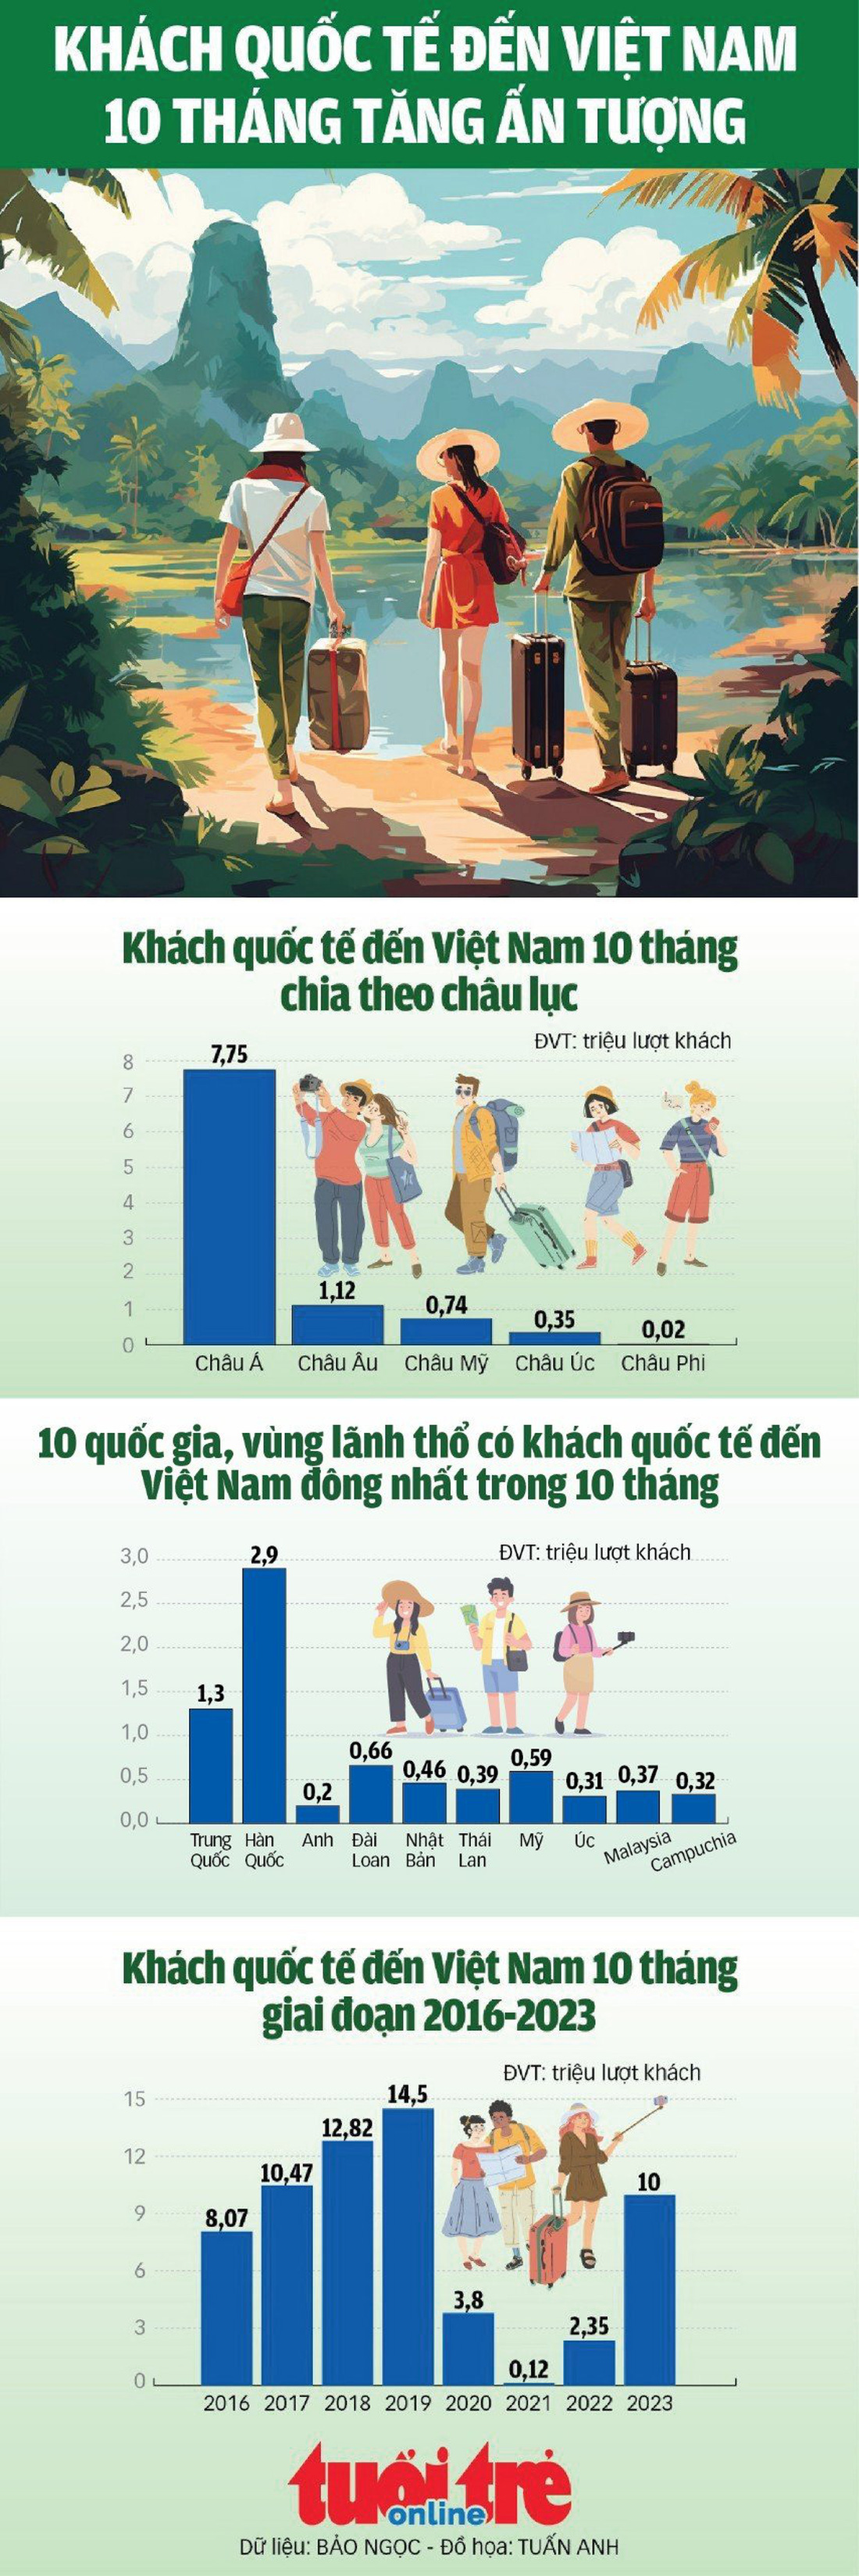 Khách quốc tế đến Việt Nam tăng ấn tượng - Ảnh 1.